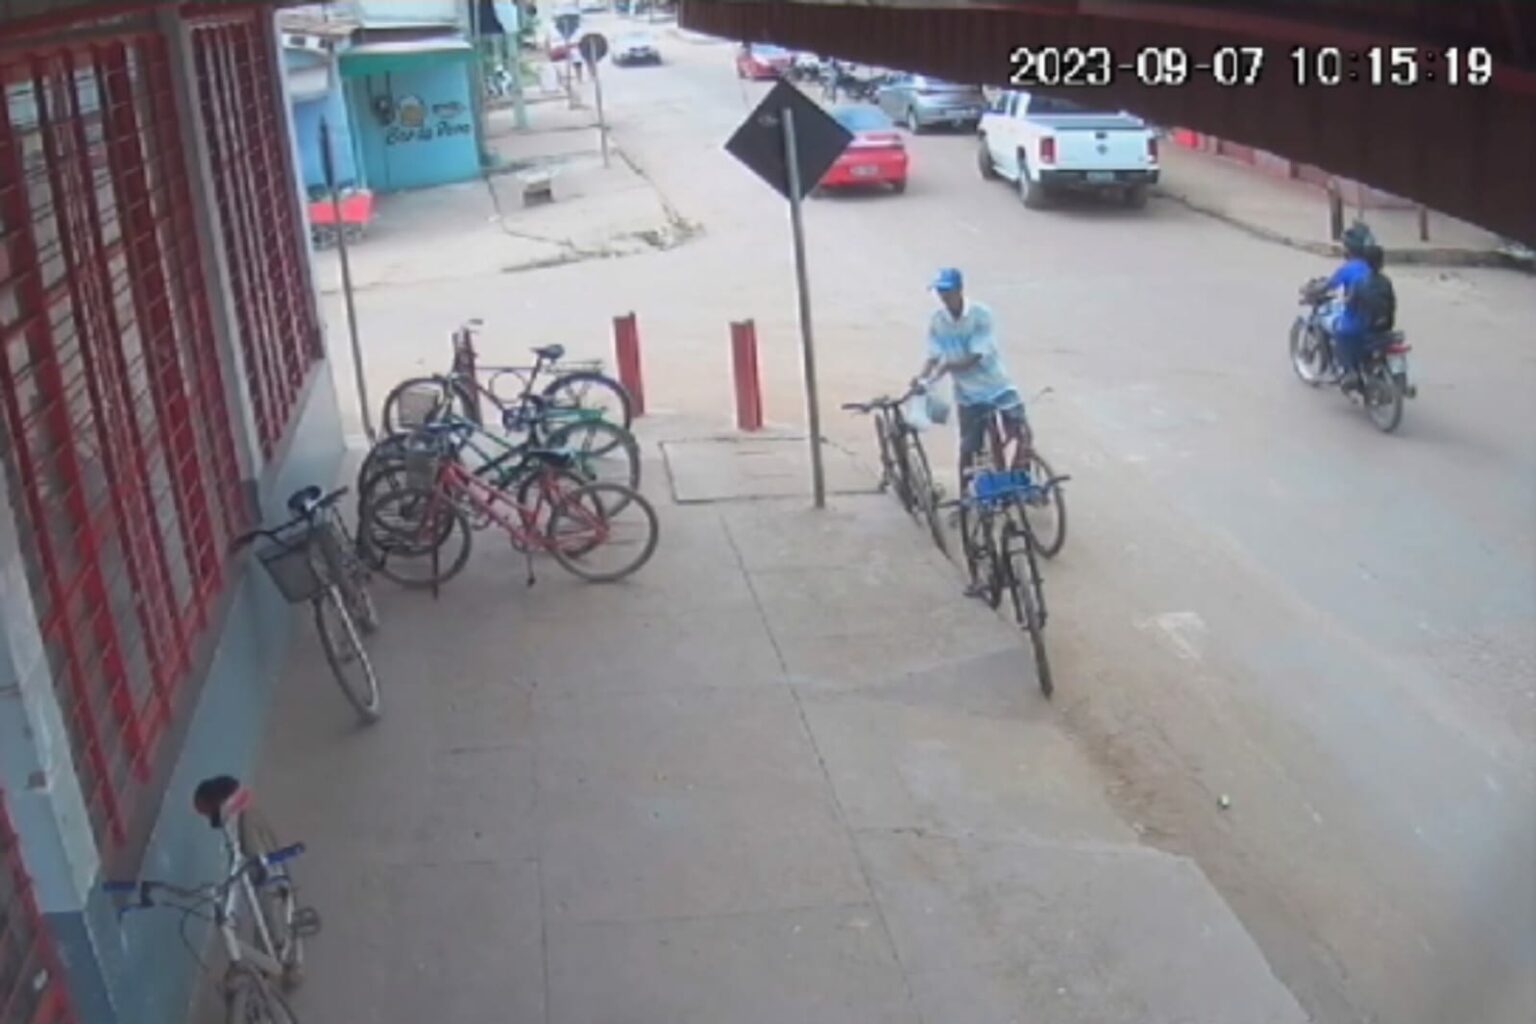 Vídeo: câmeras de segurança registram furto em supermercado de Marabá